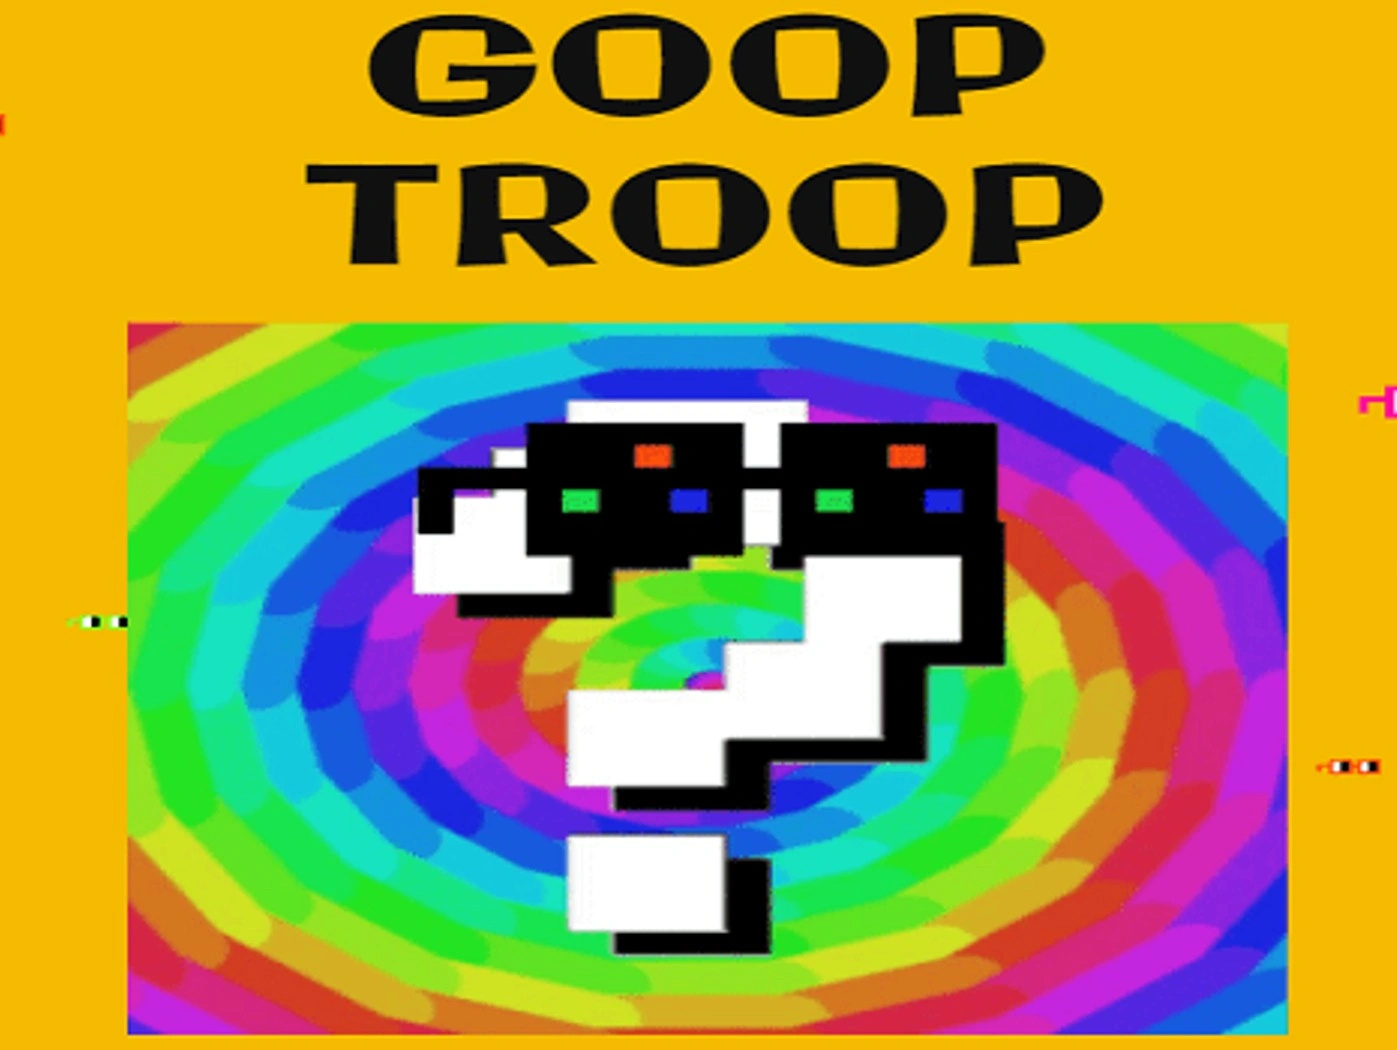 Goop Troop